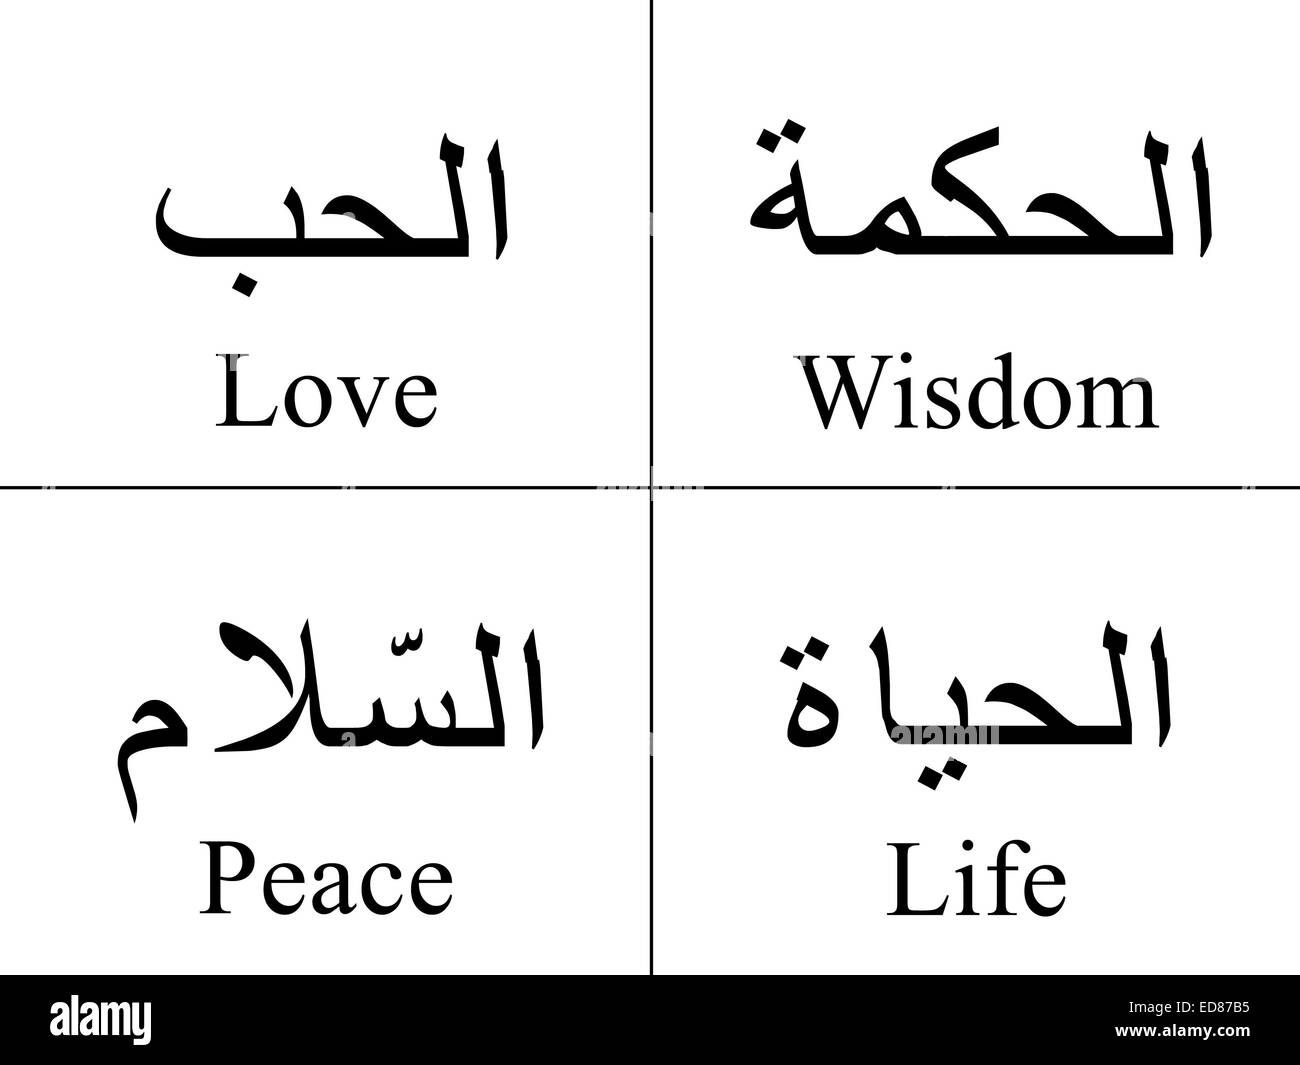 4 il linguaggio arabo in parole in silhouette, amore, pace e saggezza & Life Foto Stock